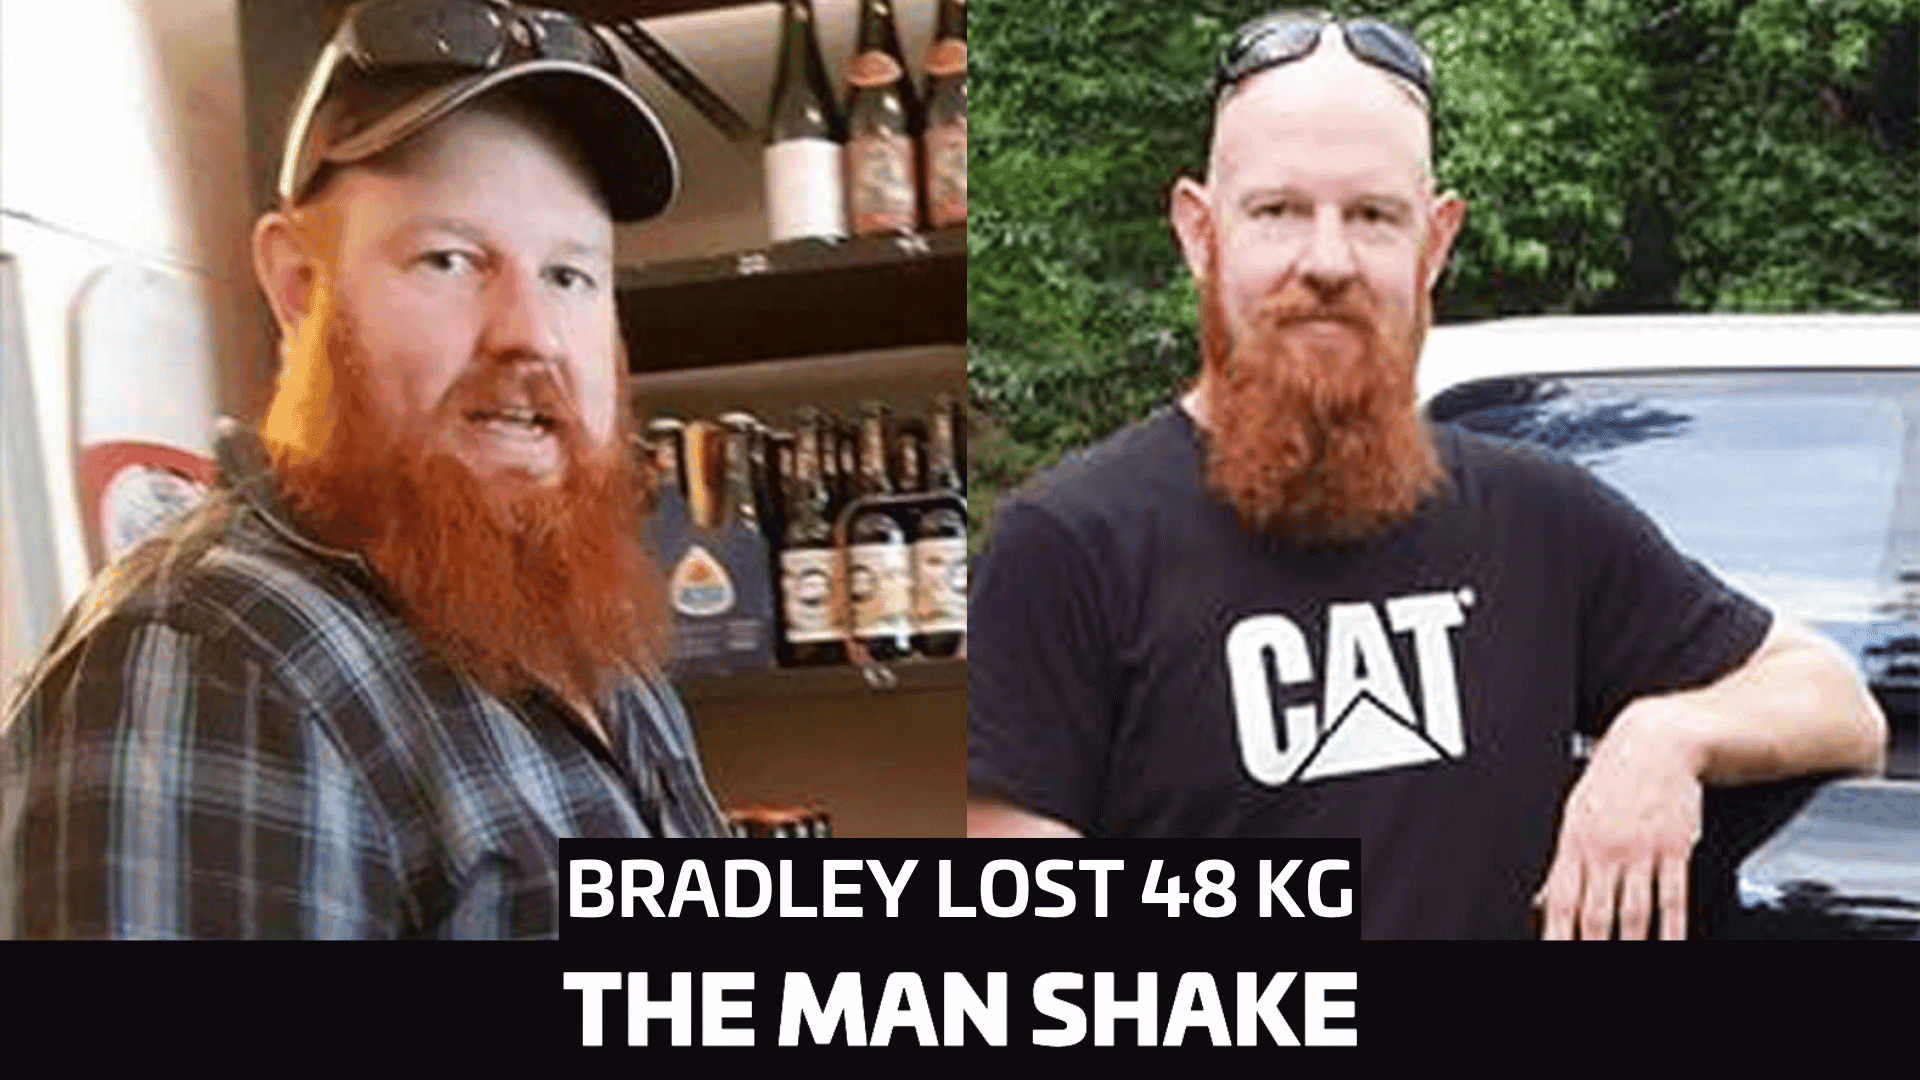 Bradley found himself after Lost 48kg